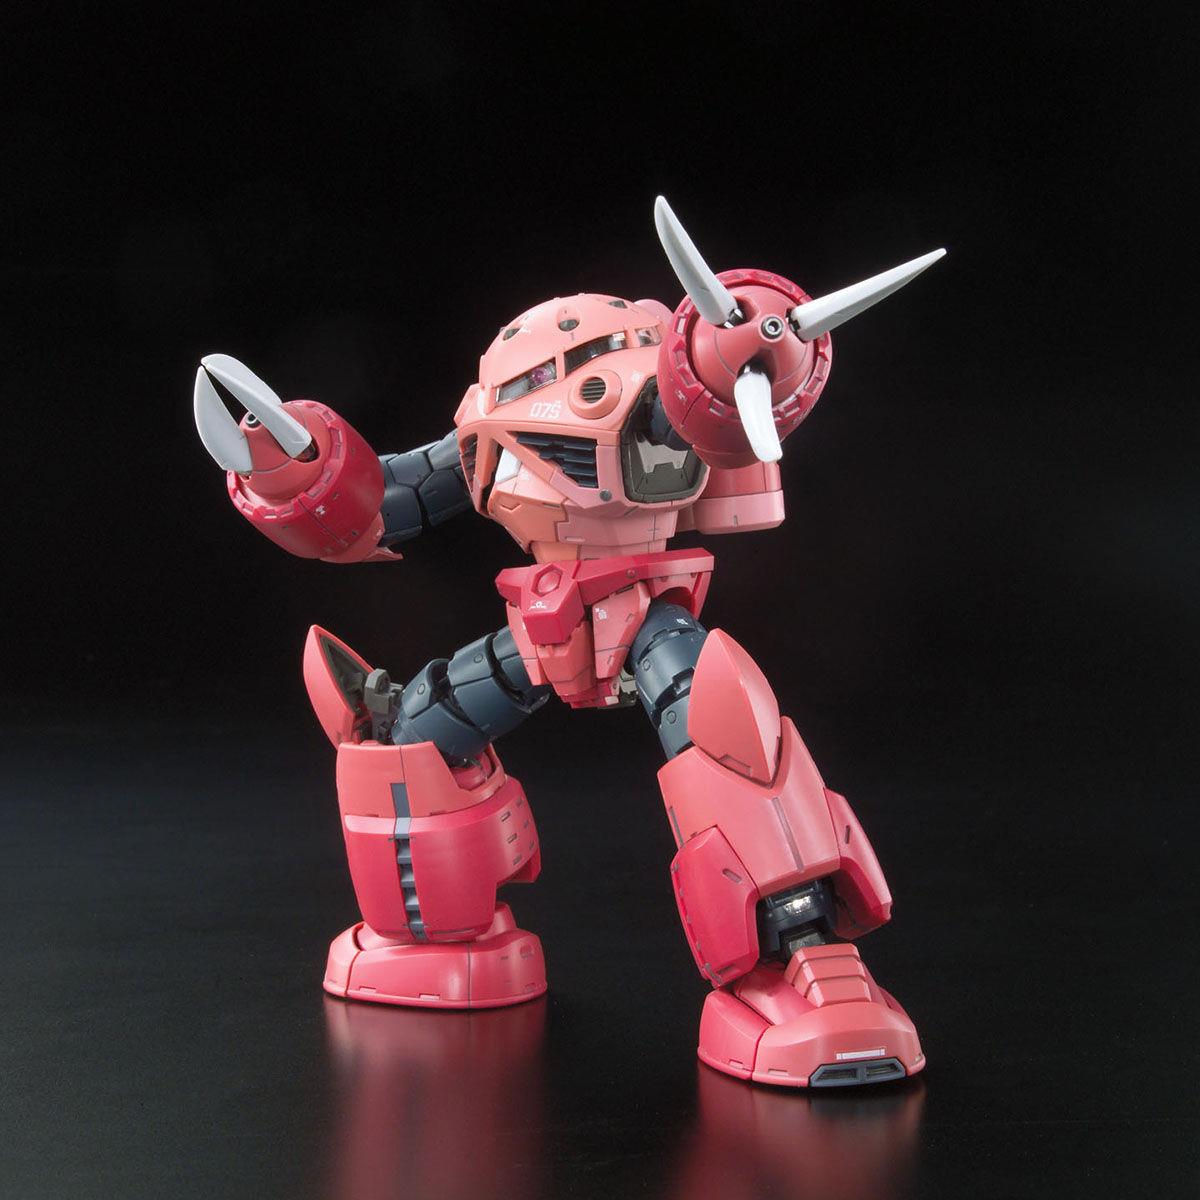 Gundam: Char's Z'Gok RG Model